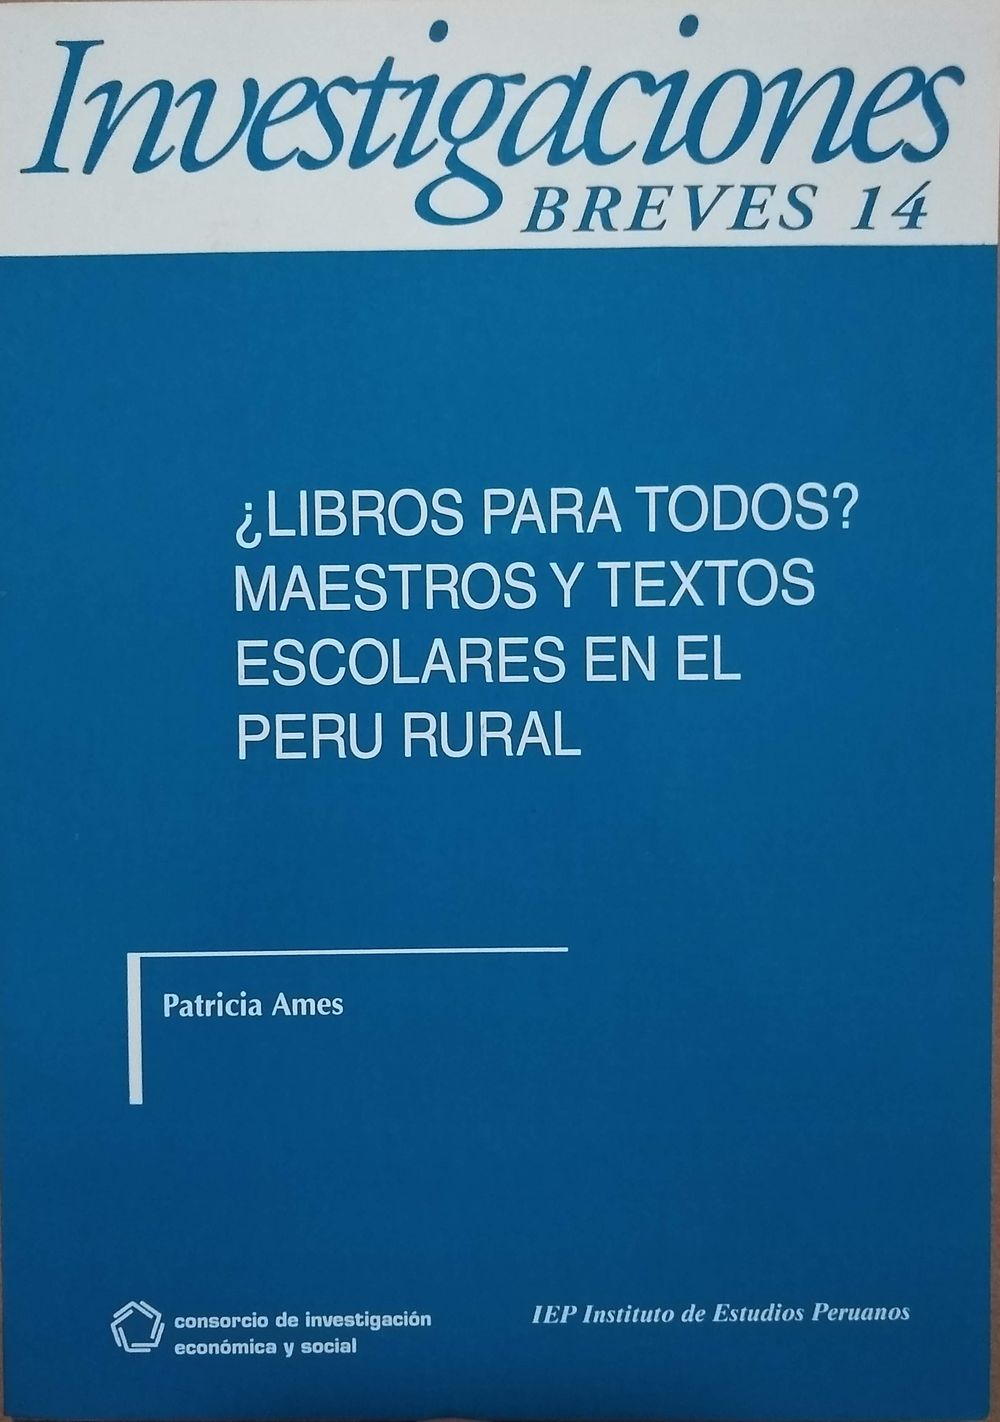 ¿Libros para todos? Maestros y textos escolares en el Perú rural.